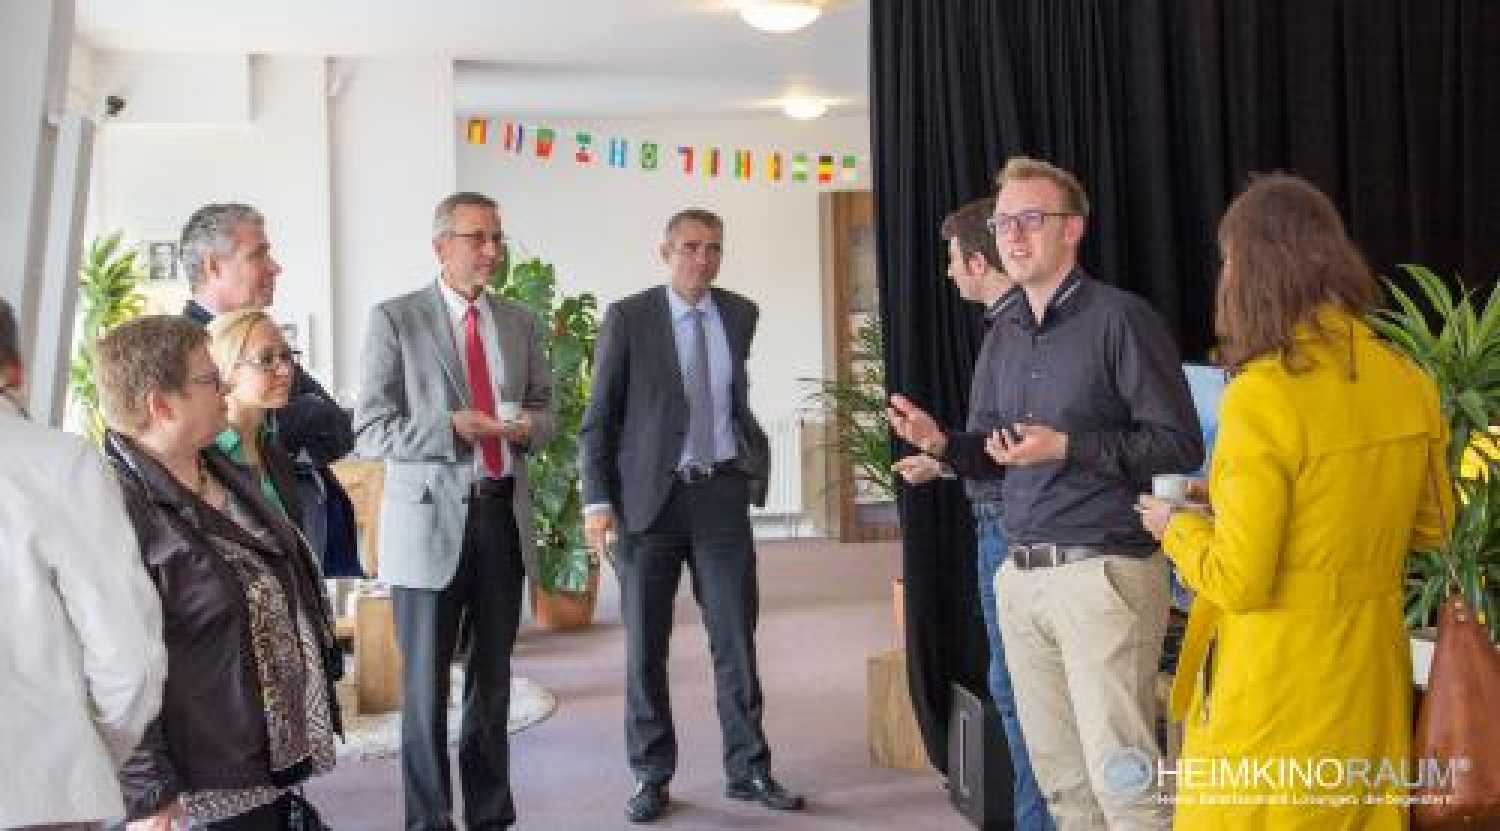 EU Kommission besucht Heimkinoraum Stuttgart